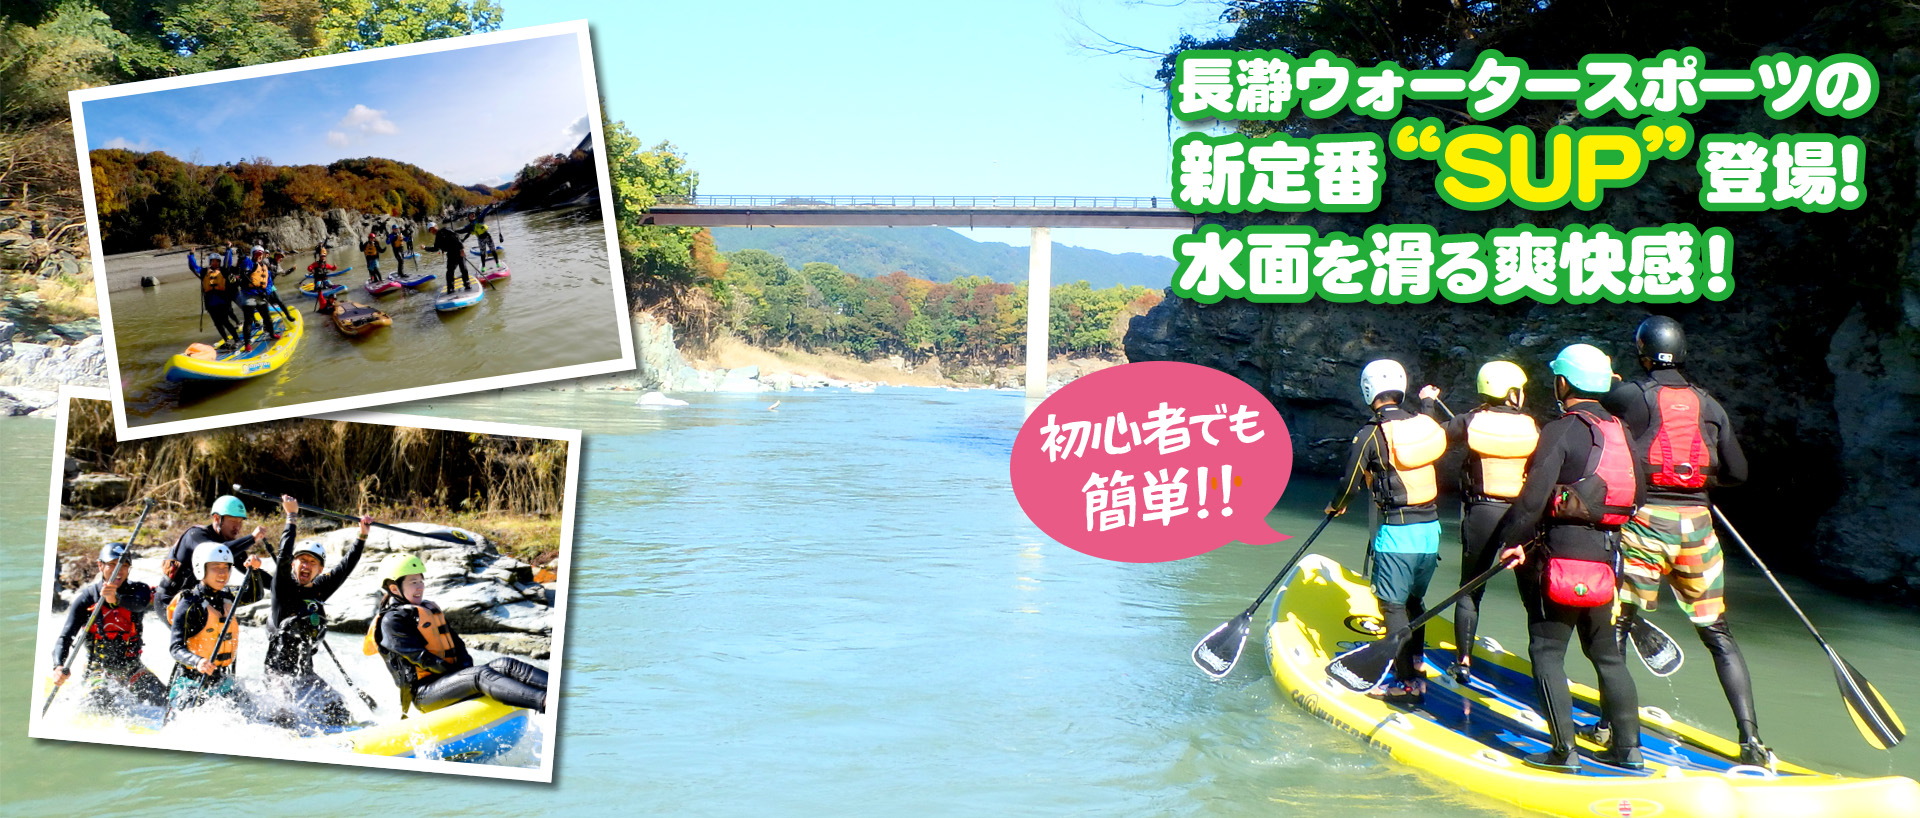 長瀞ウォータースポーツの新定番”SUP”登場 水面を滑る爽快感！初心者でも簡単